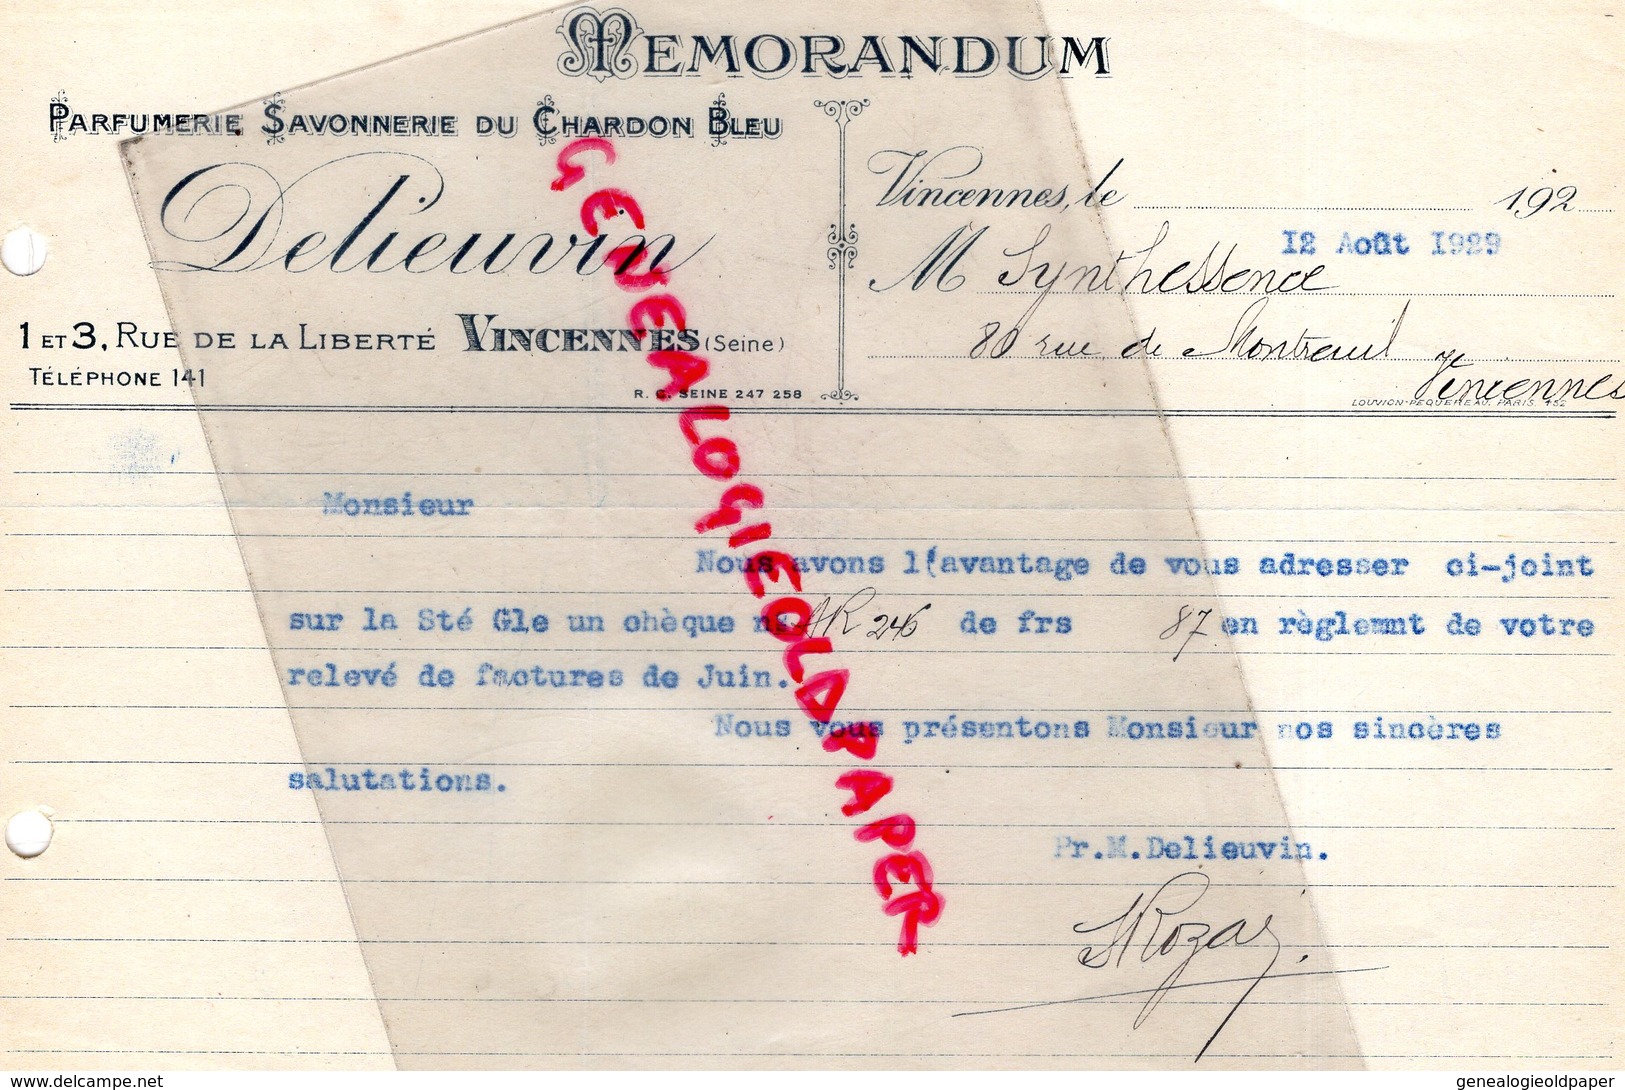 94- VINCENNES- MEMORANDUM DELIEUVIN- PARFUMERIE SAVONNERIE DU CHARDON BLEU- PARFUM -1 RUE LIBERTE- 1929 - Drogerie & Parfümerie